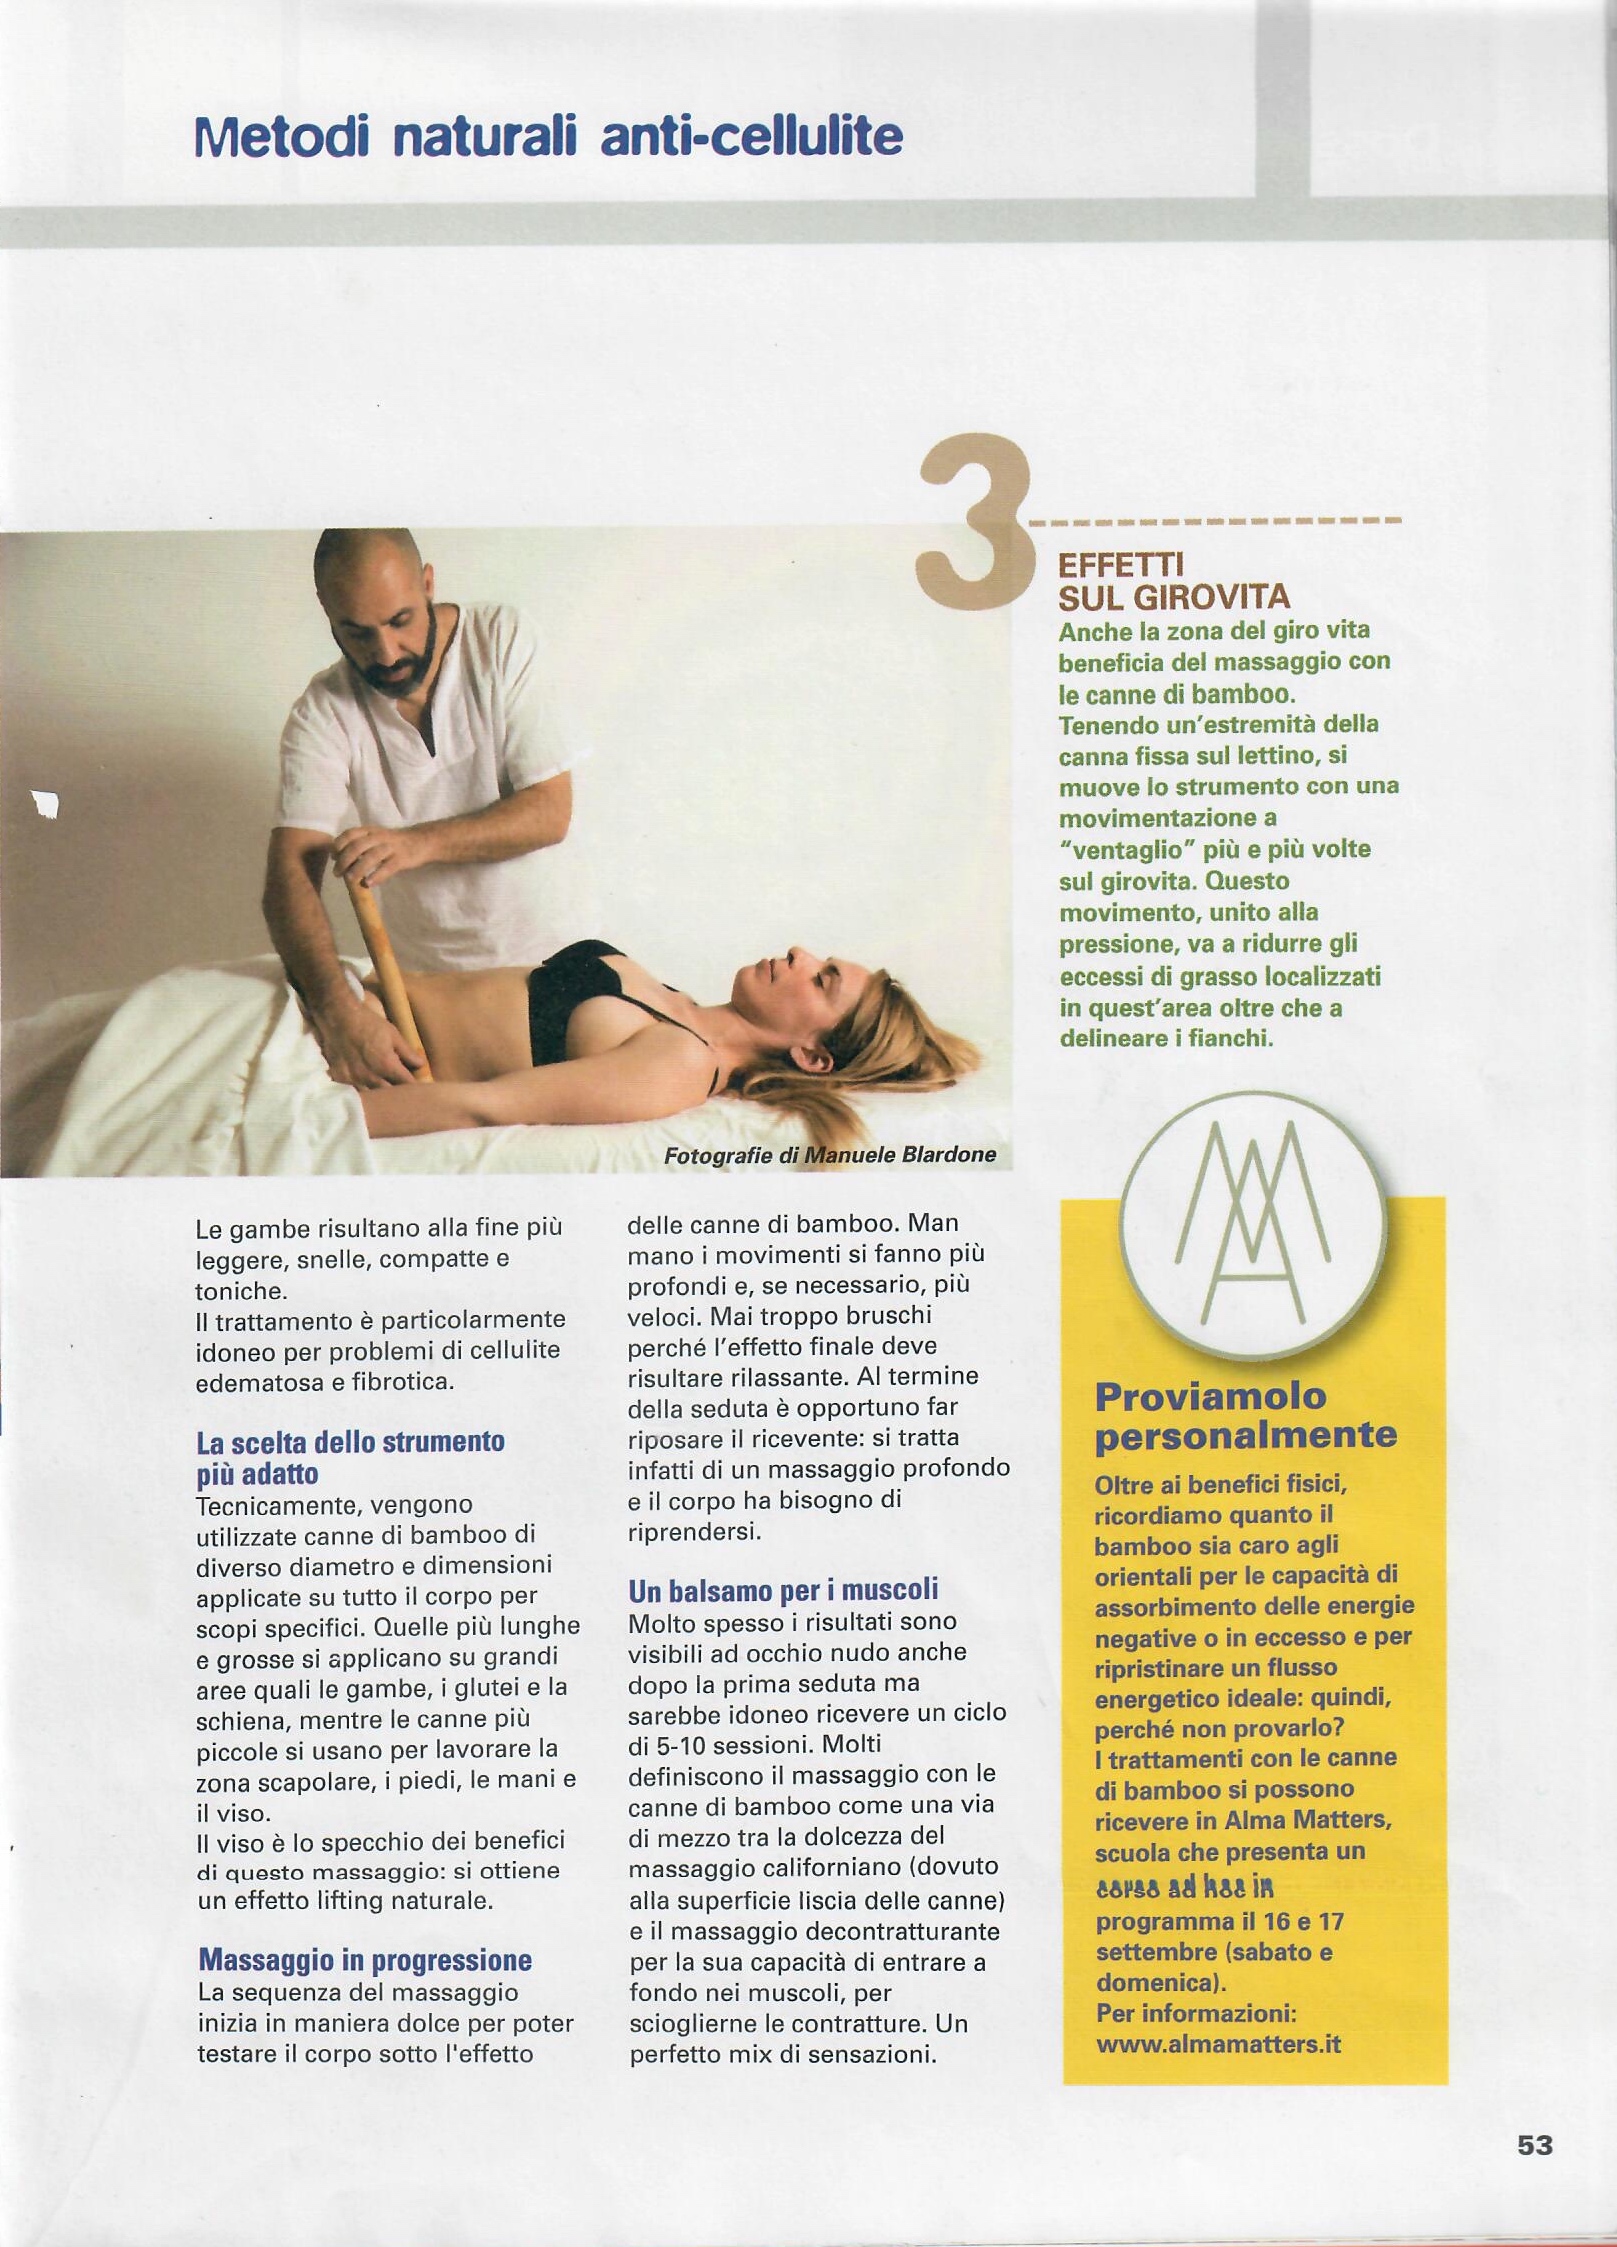 L'altra medicina n° 64 - marzo 2017 - Massaggio con i bambù - Foto di Manuele Blardone.2